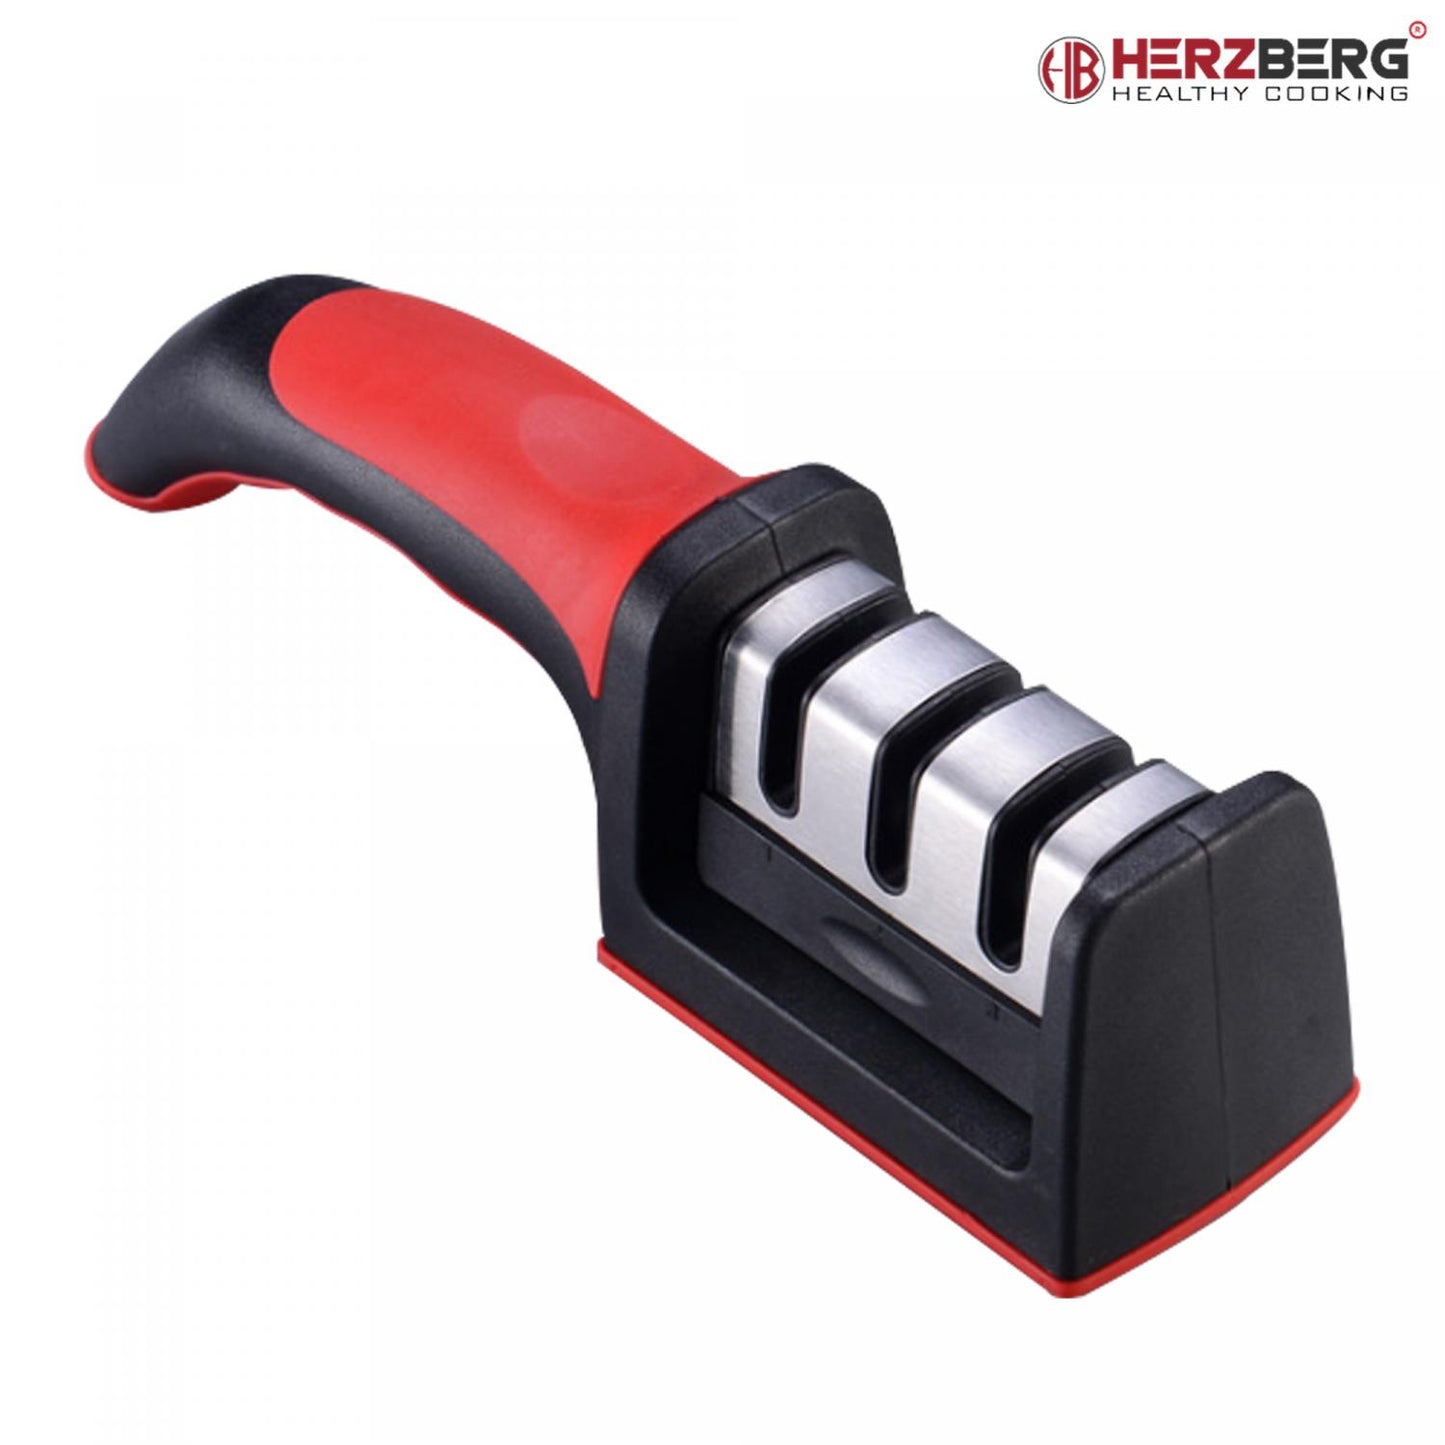 Herzberg Sturdy Knife Sharpener Red/Black